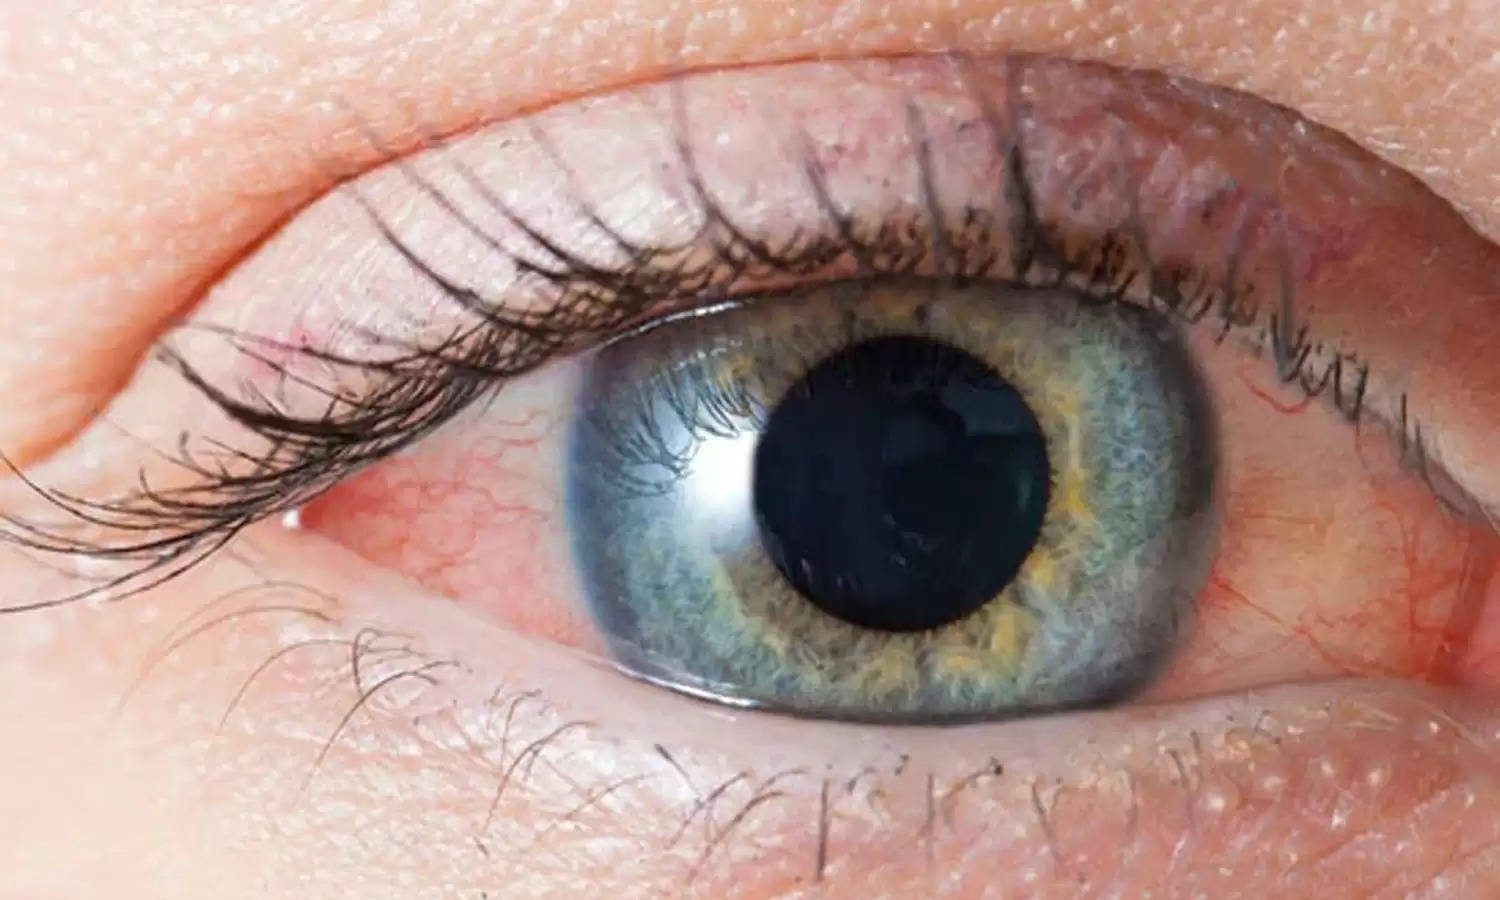 गंभीर समस्या का संकेत हो सकता है आंखों का लालपन, समय रहते सावधान हो जाइए